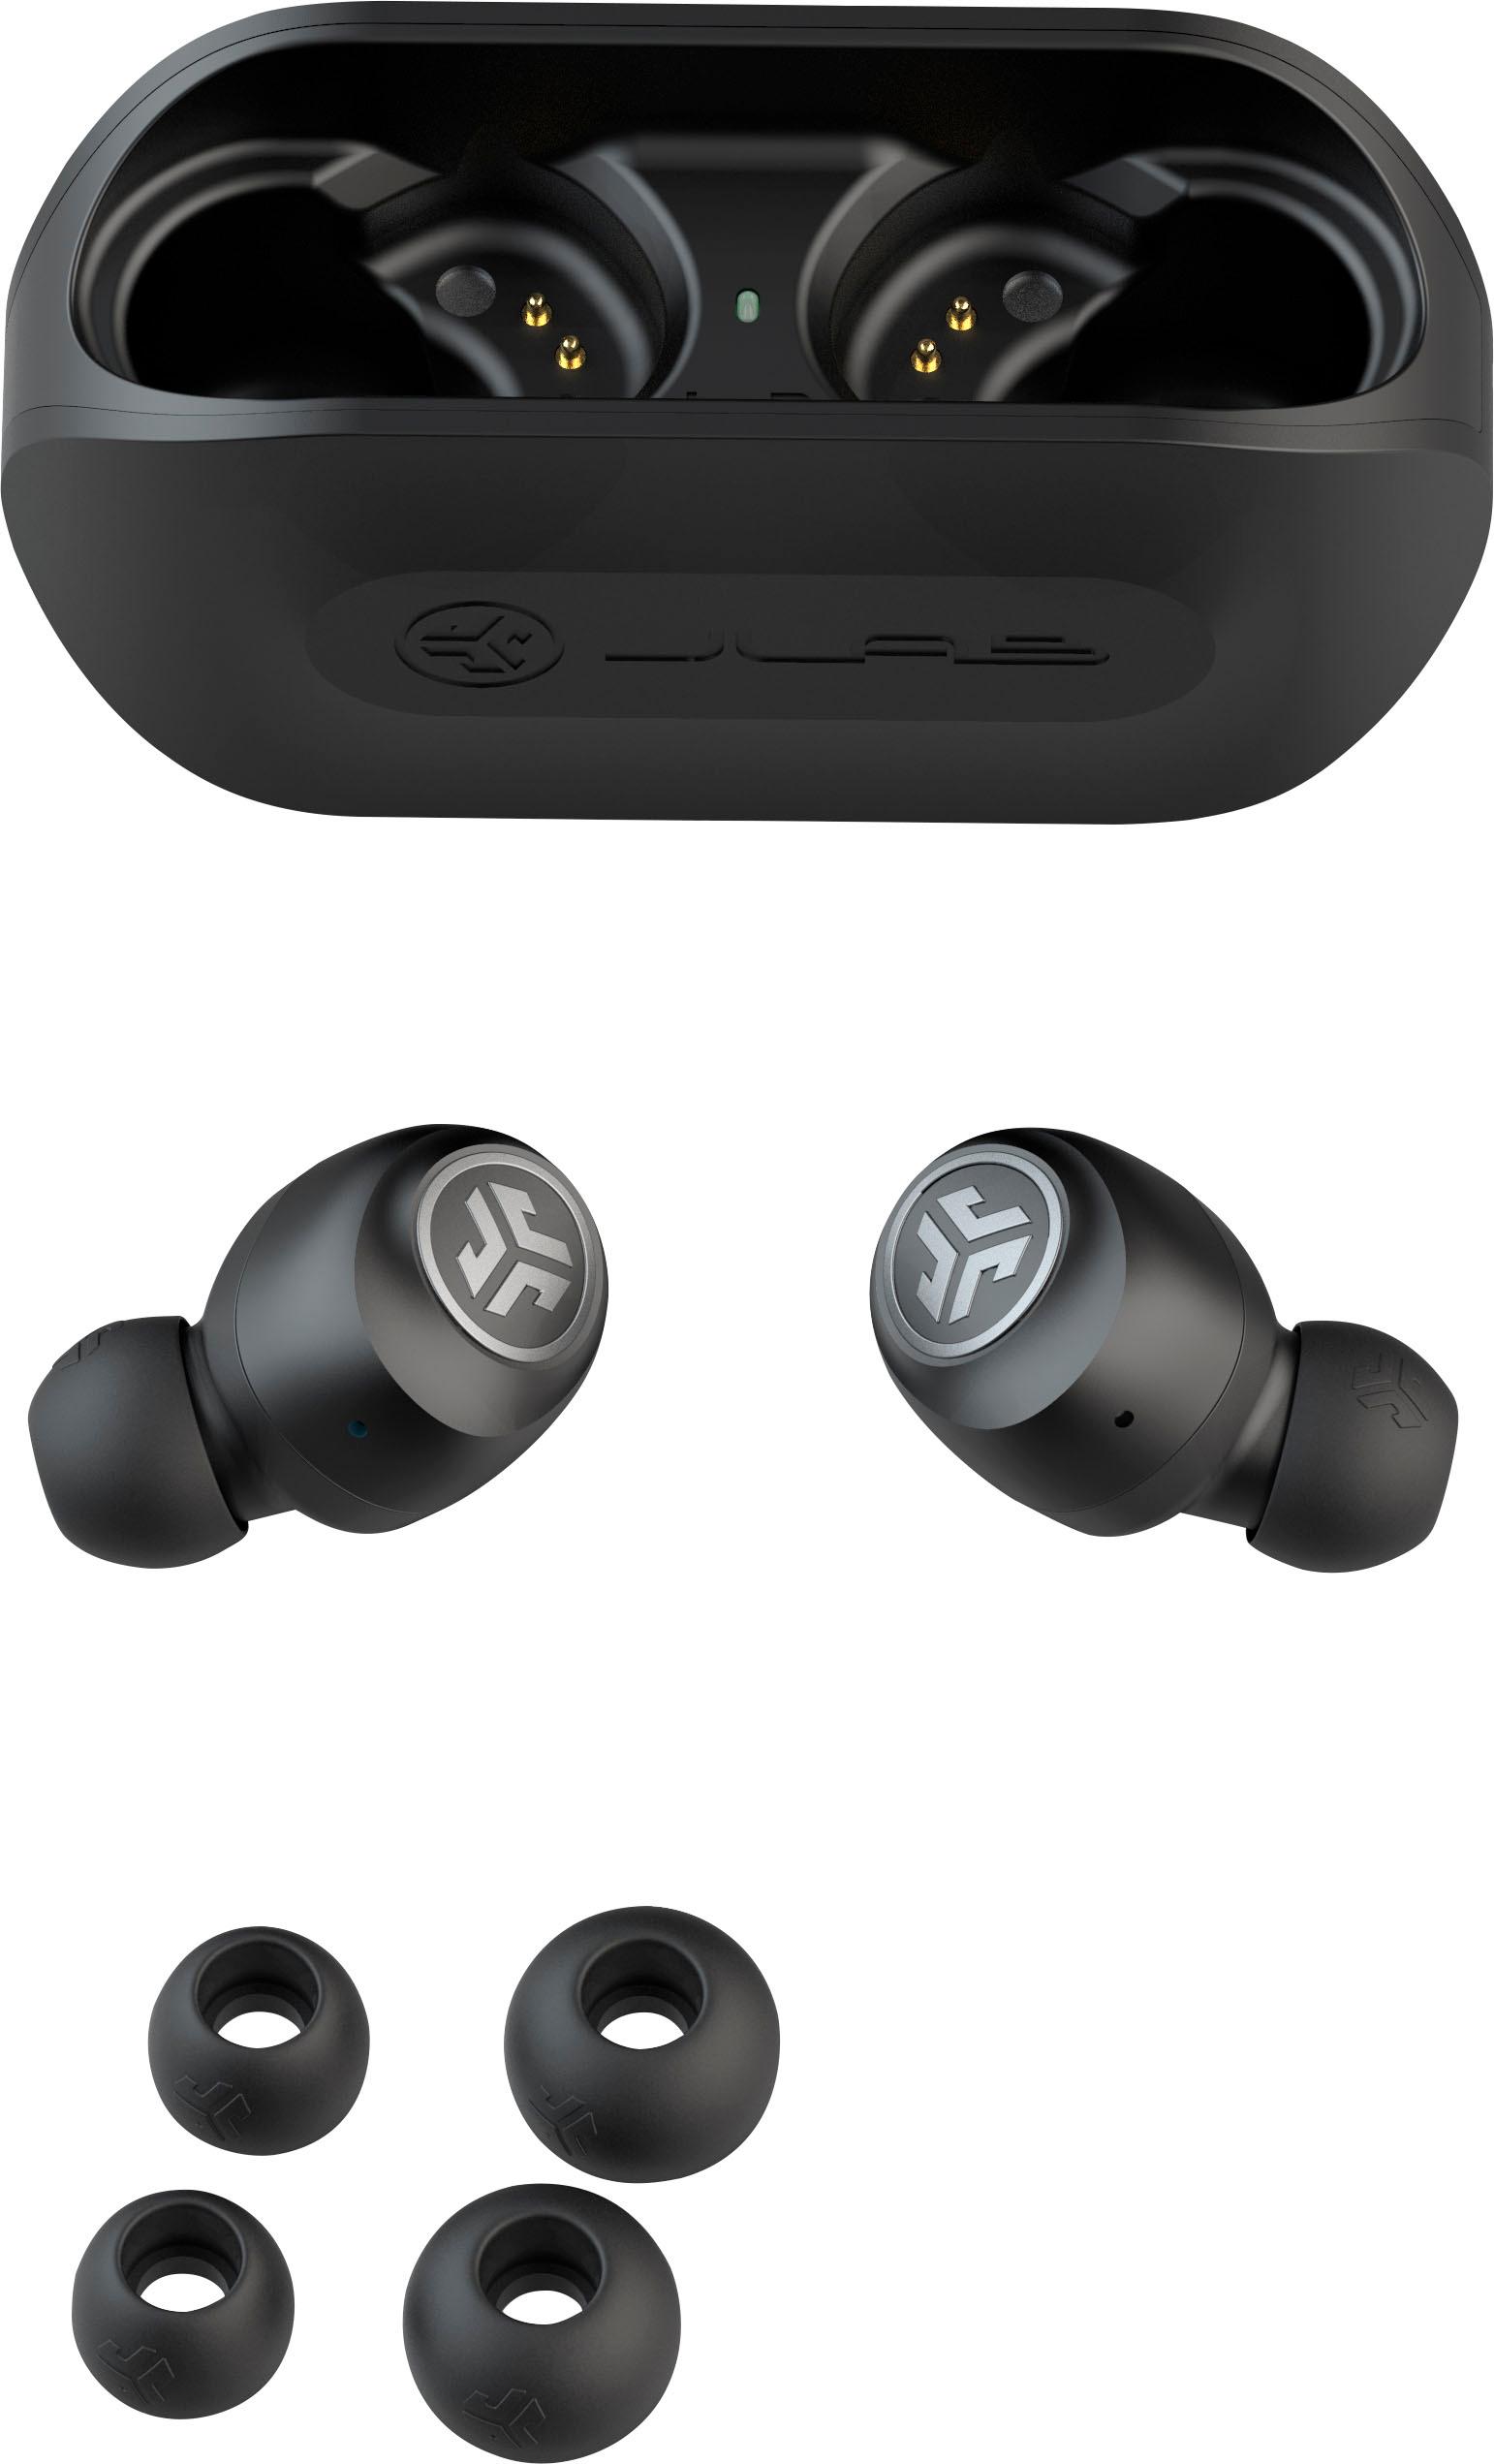 JLab GO Air True Wireless In-Ear Headphones Black EBGOAIRRBLK82 - Best Buy